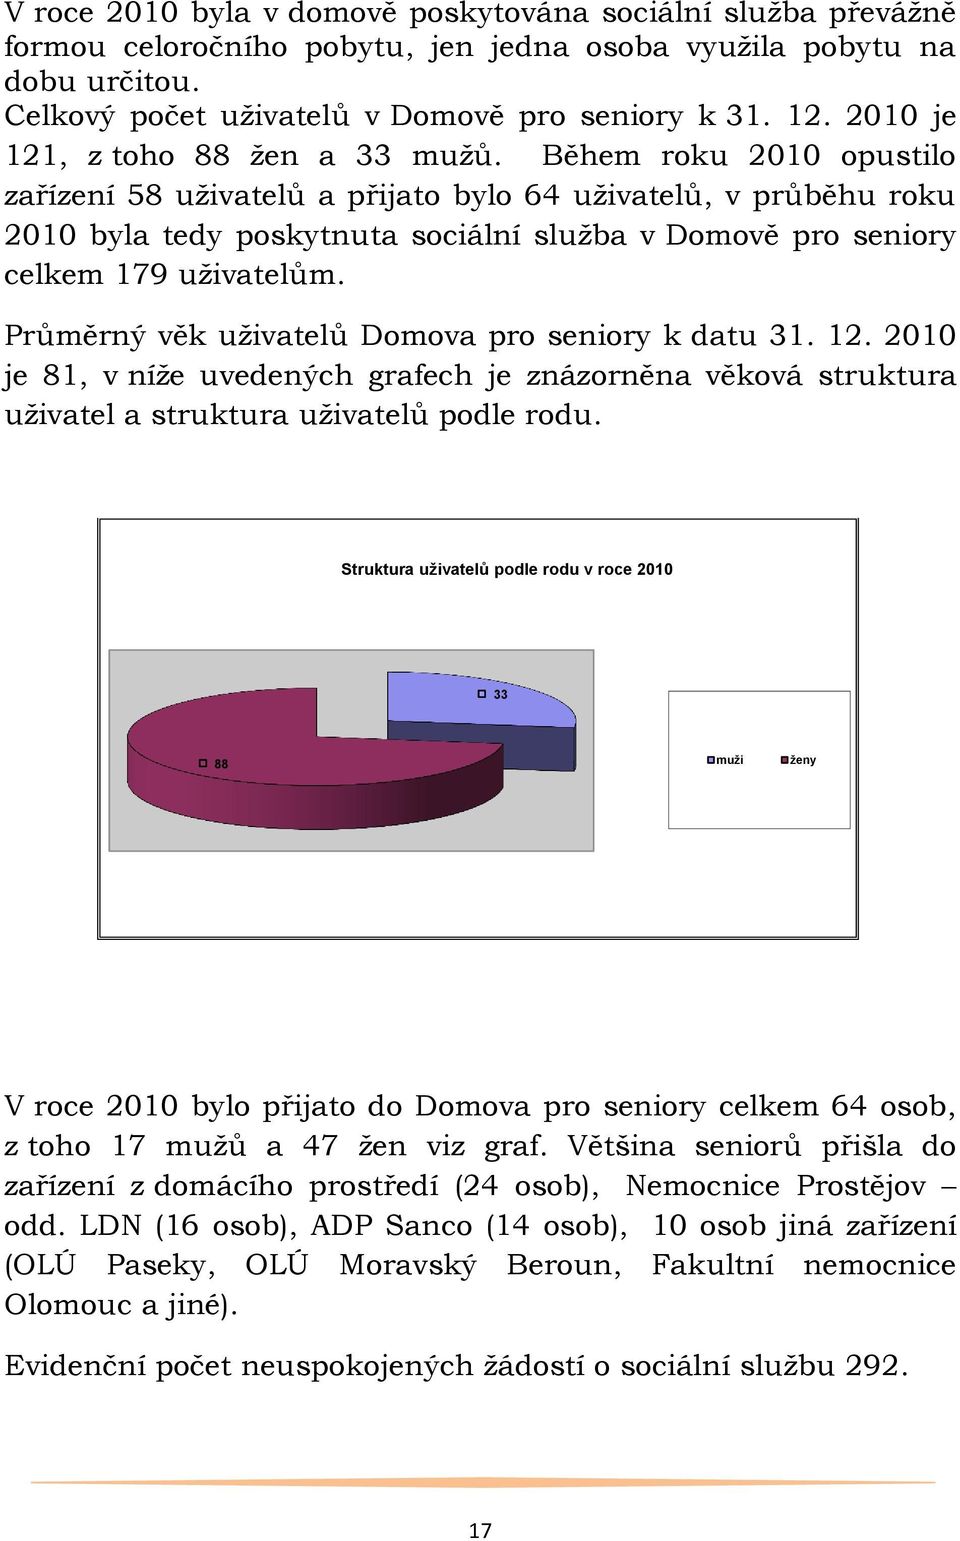 Během roku 2010 opustilo zařízení 58 uţivatelů a přijato bylo 64 uţivatelů, v průběhu roku 2010 byla tedy poskytnuta sociální sluţba v Domově pro seniory celkem 179 uţivatelům.